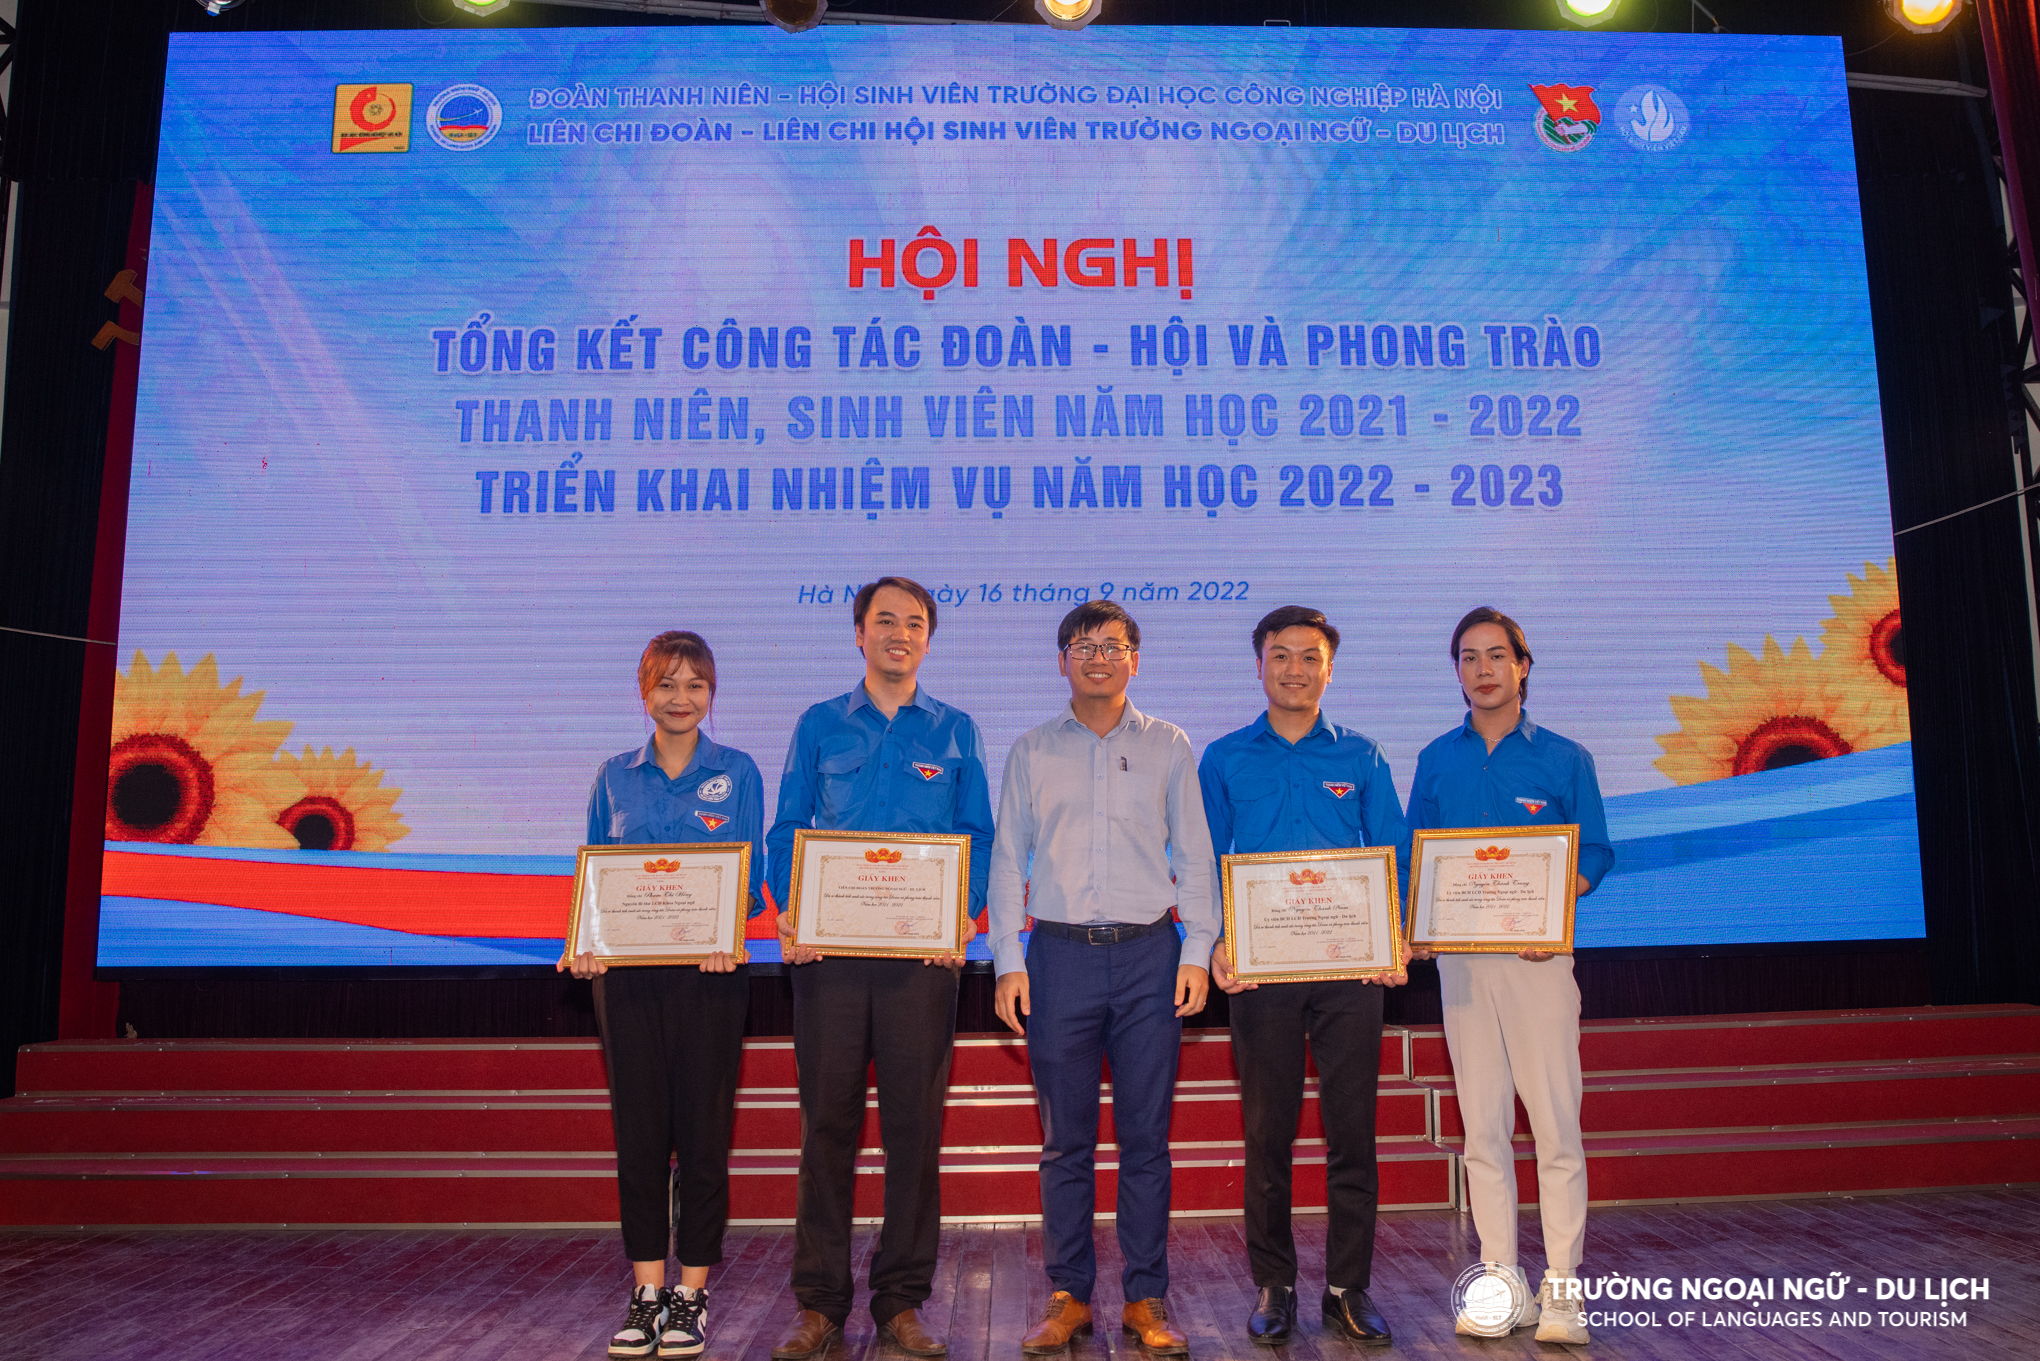 Đồng chí Nguyễn Đình Tiến - Phó Bí thư Đoàn Thanh niên Nhà trường trao giấy khen cho tập thể BCH Liên chi Đoàn và các cá nhân đã có thành tích xuất sắc trong năm học 2021 - 2022